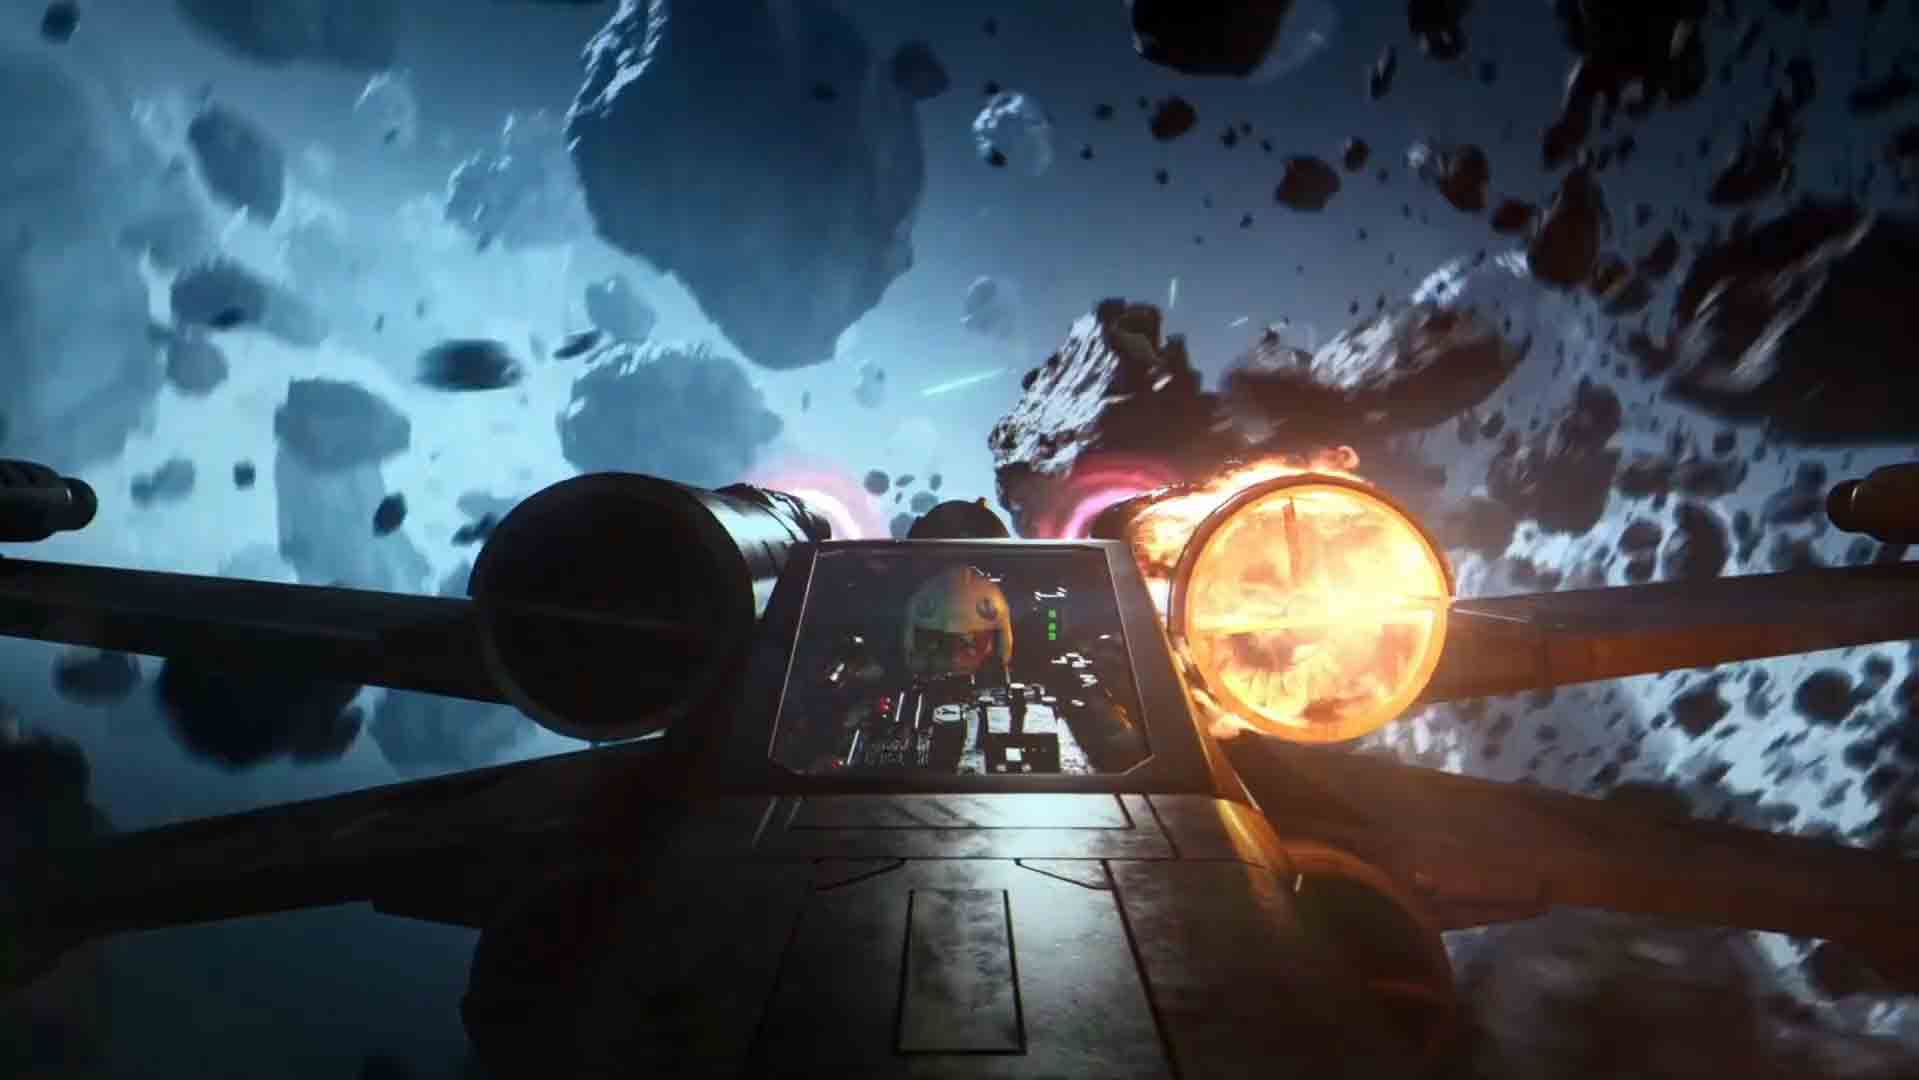 Star Wars Battlefront 2 — Space Battles Trailer: IMAGES, VIDEO